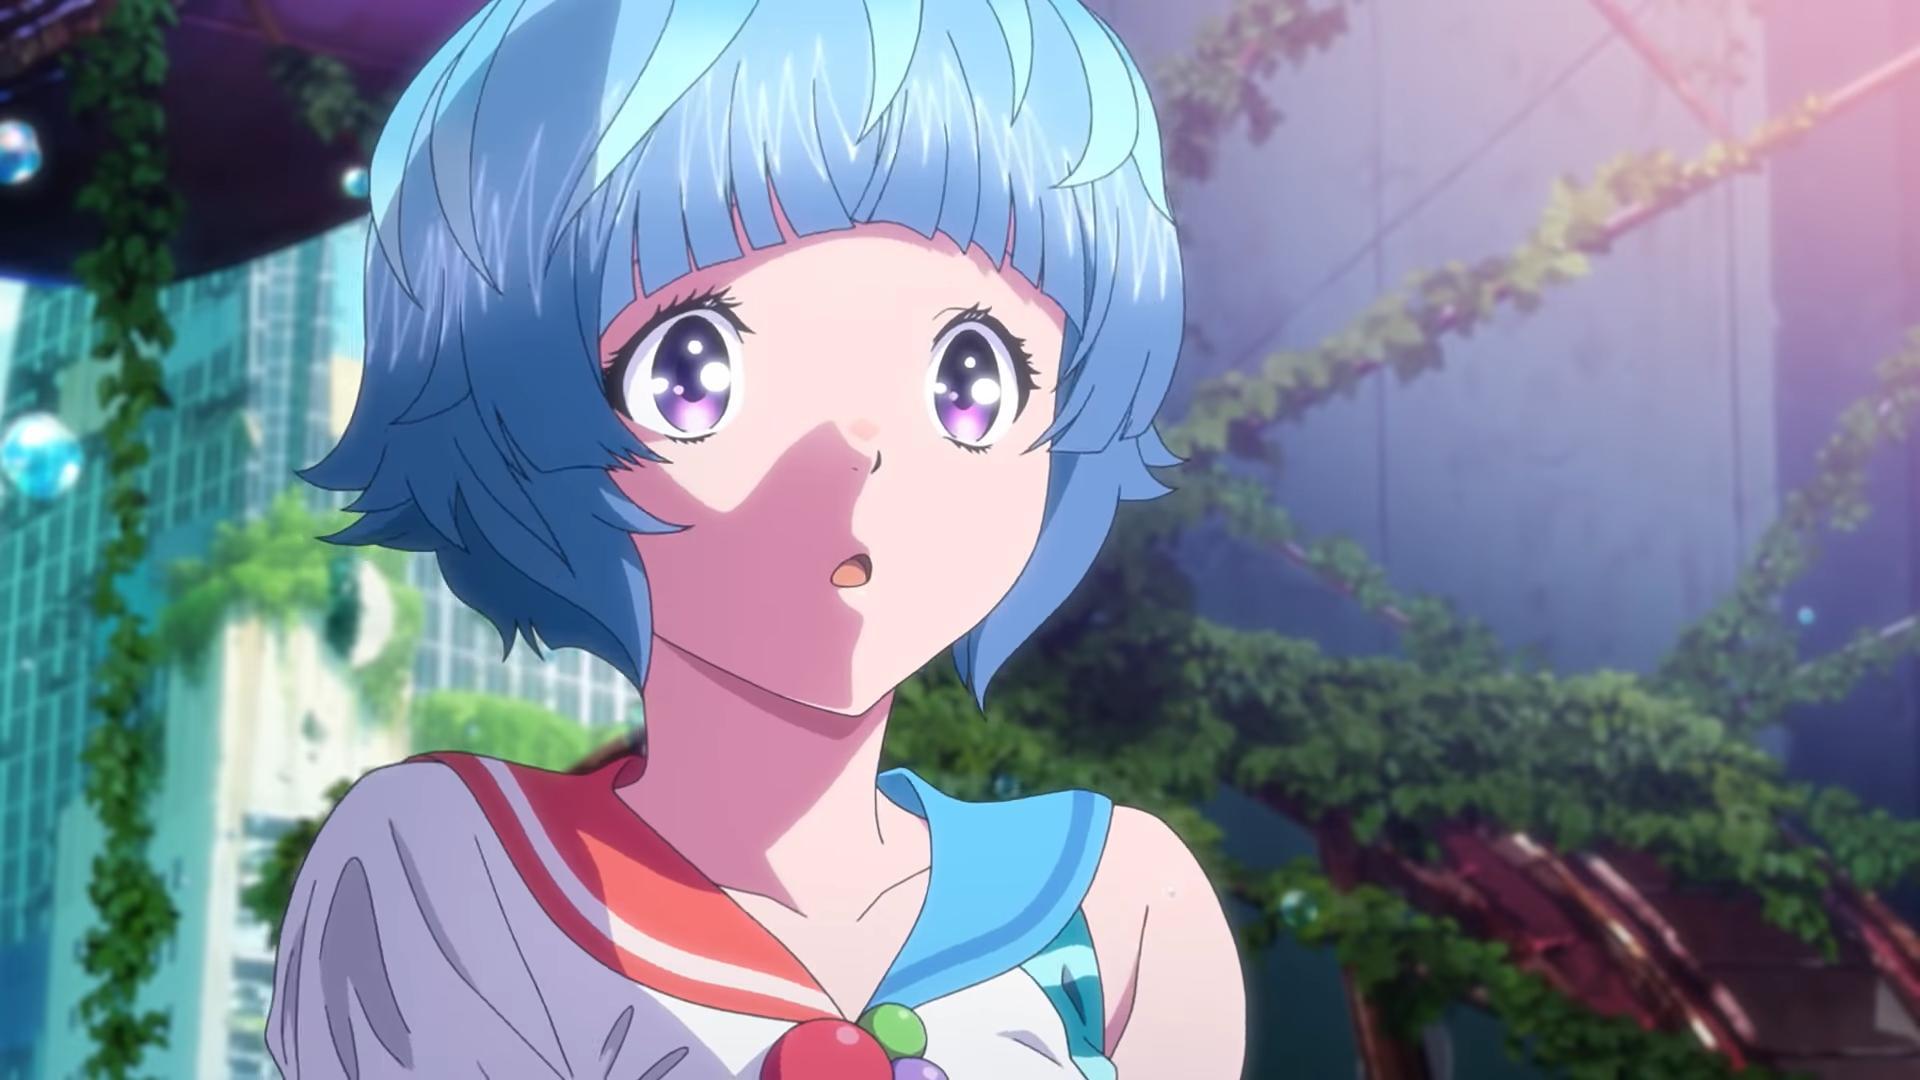 Revelado o visual adaptado de Bubble Girl para anime! • UltraNews